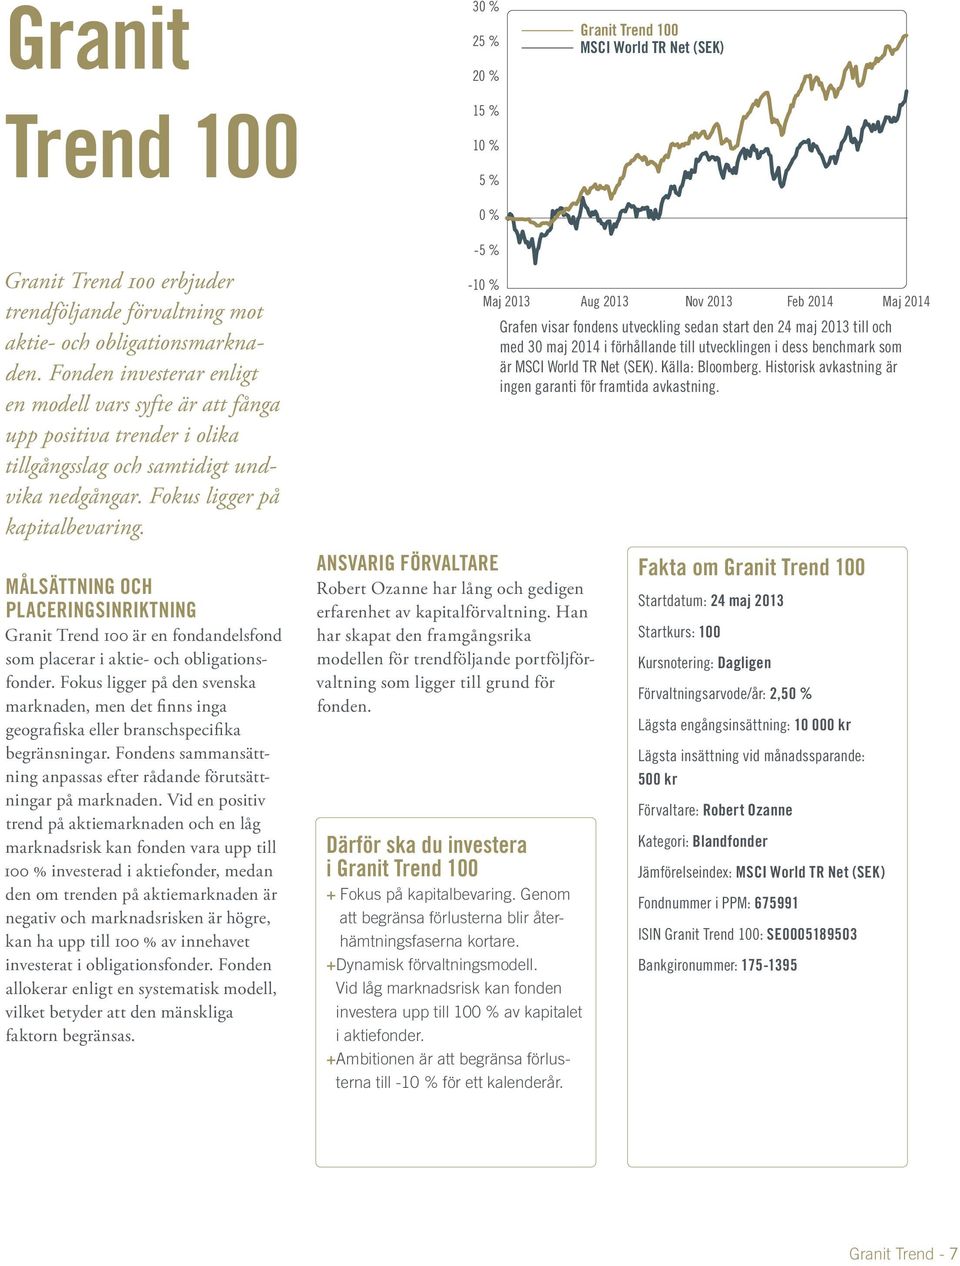 Målsättning och placeringsinriktning Granit Trend 100 är en fondandelsfond som placerar i aktie- och obligationsfonder.